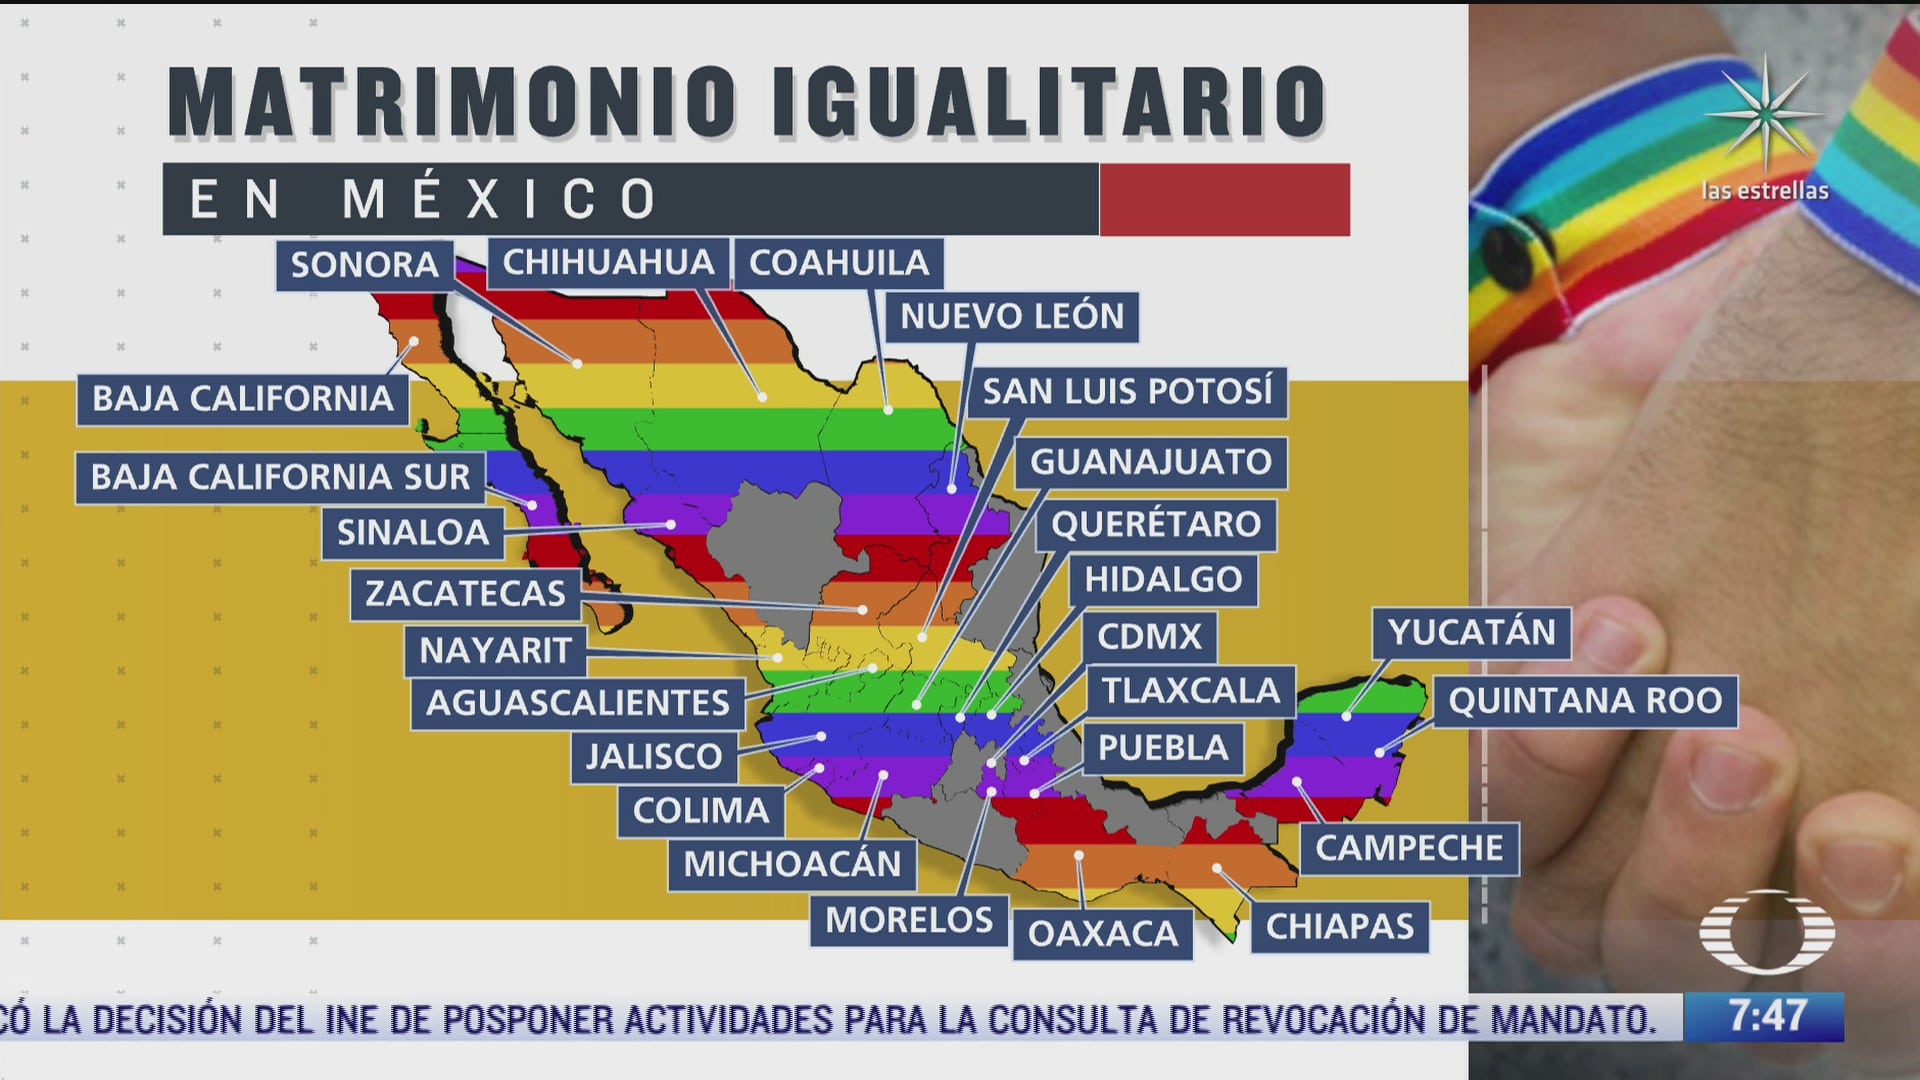 ademas de guanajuato que otros estados han aprobado el matrimonio igualitario en mexico